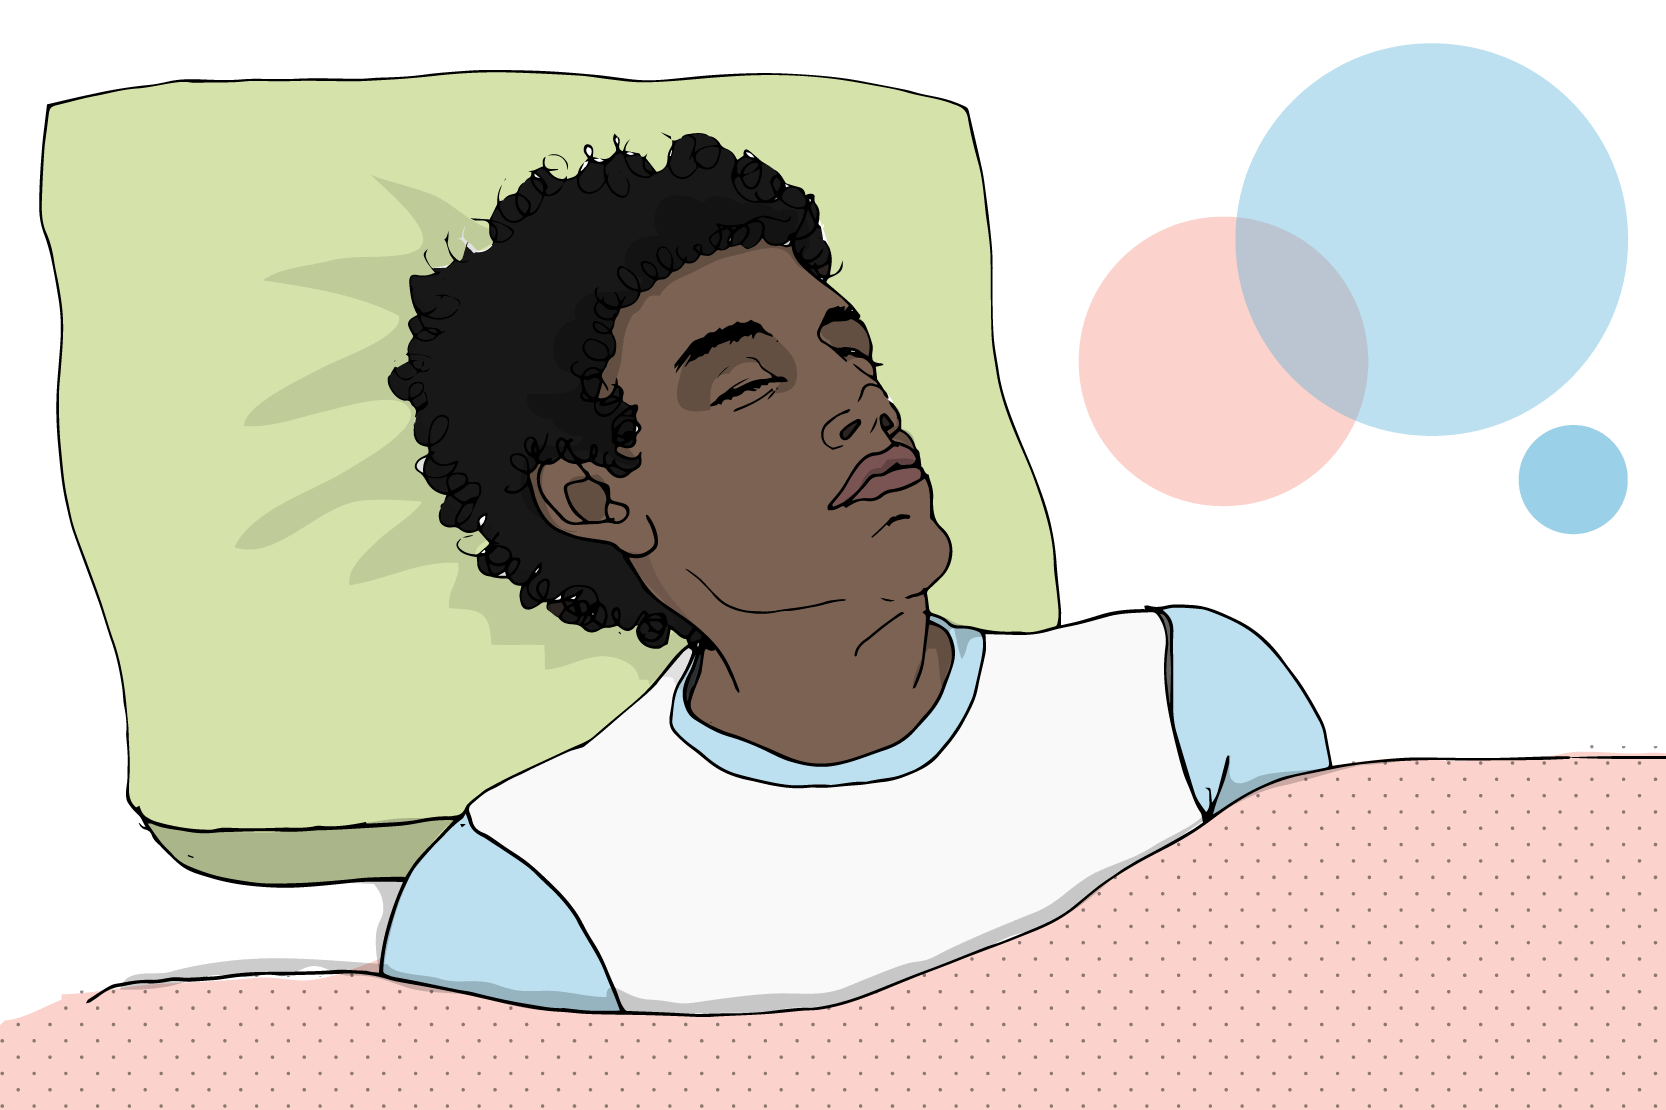 En person ligger och sover gott. Illustration.